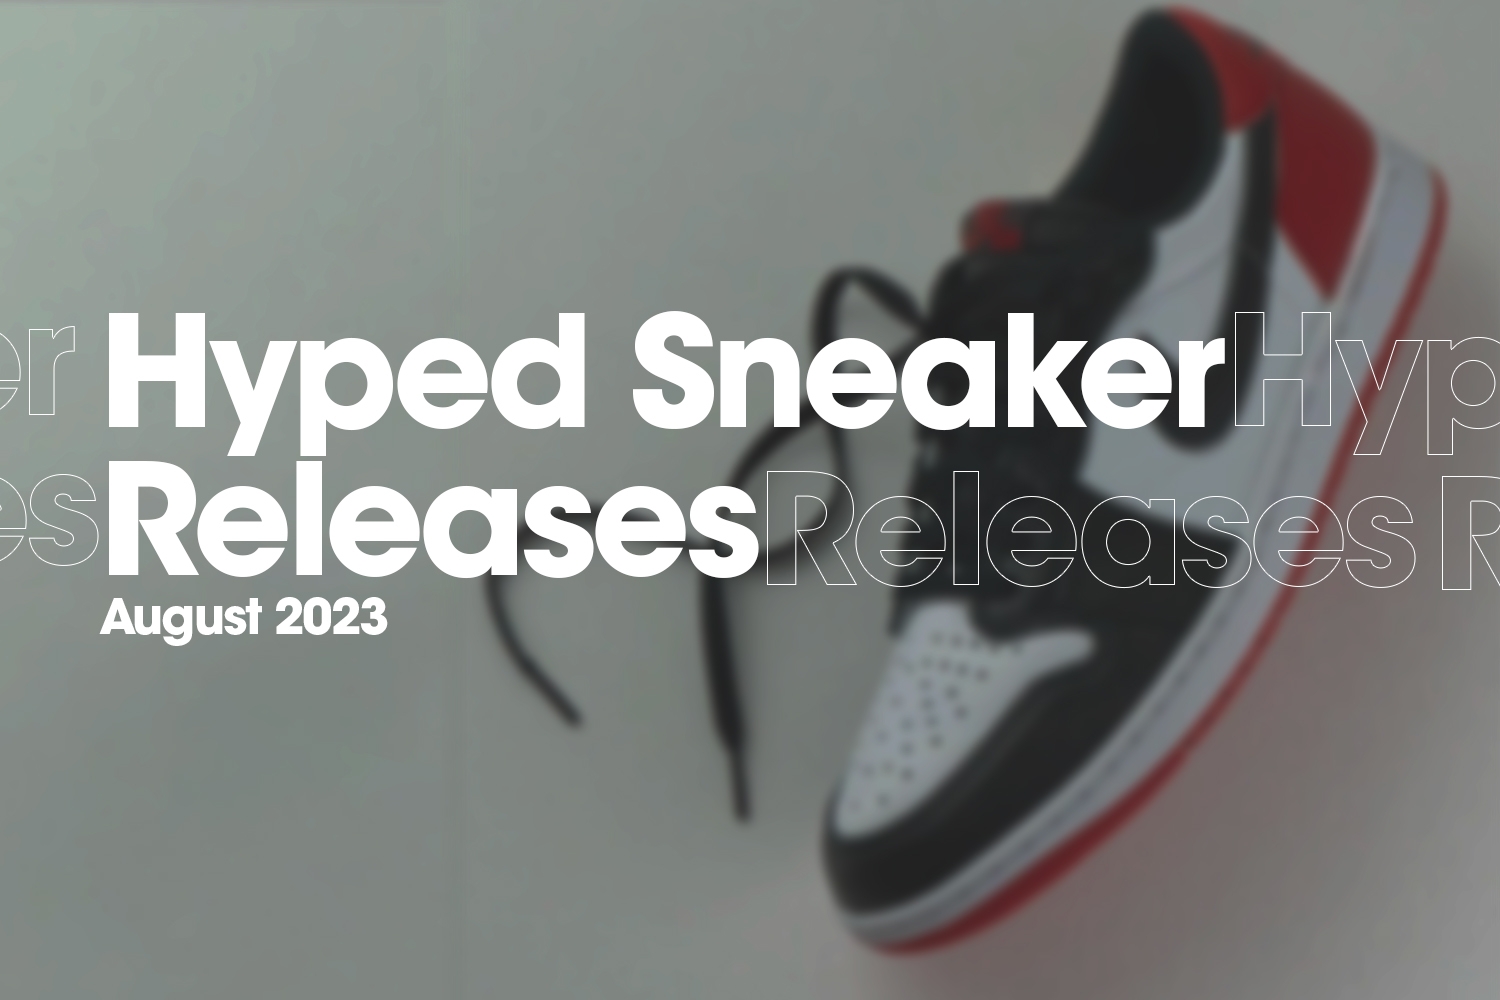 Hyped Sneaker Releases van augustus 2023